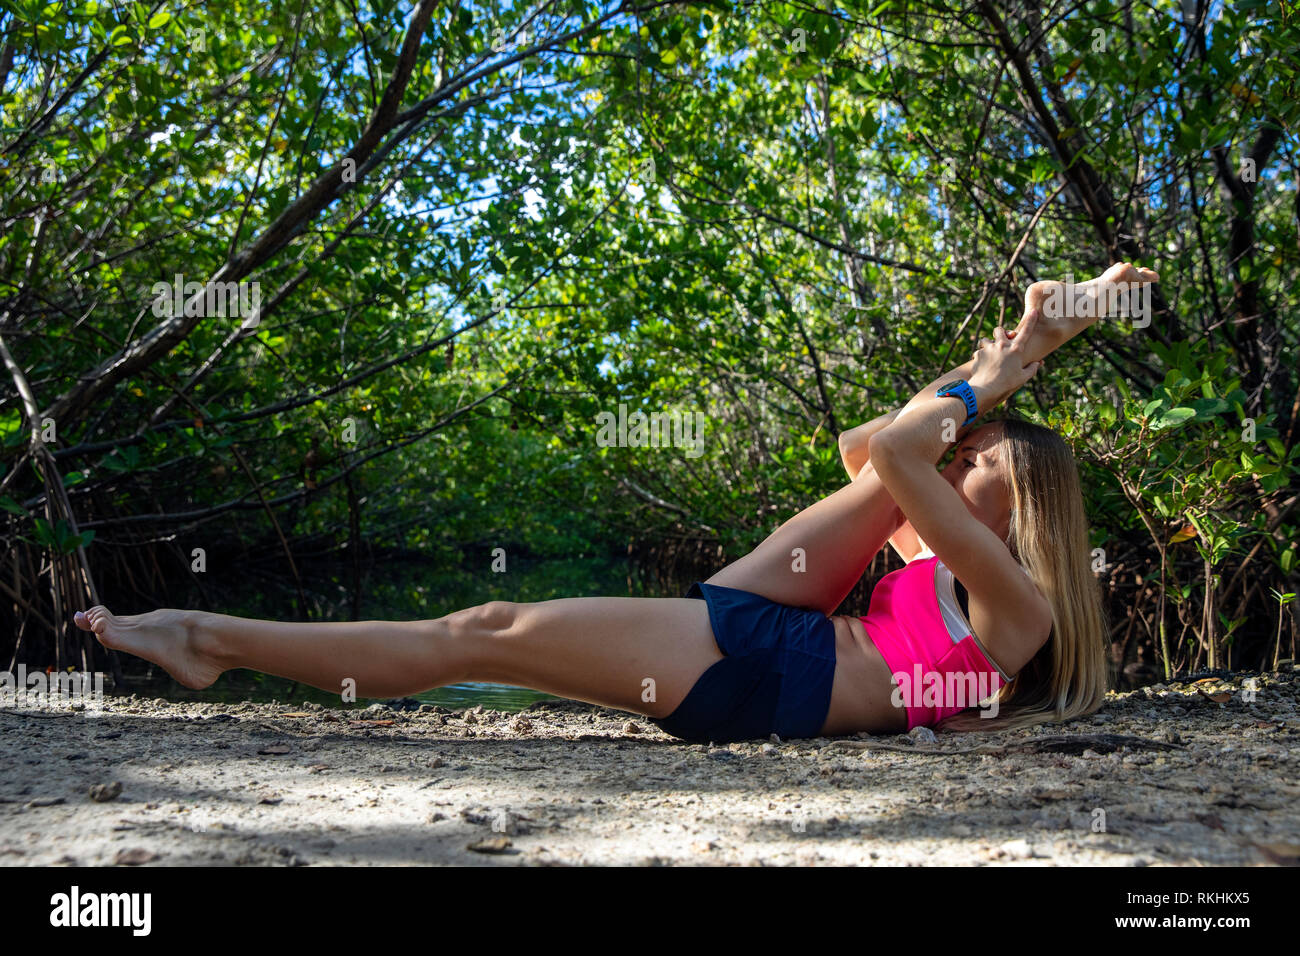 Mujer joven practicando yoga (modificado a manos reclinables representan la pierna) en un entorno natural - Fort Lauderdale, Florida, EE.UU. Foto de stock